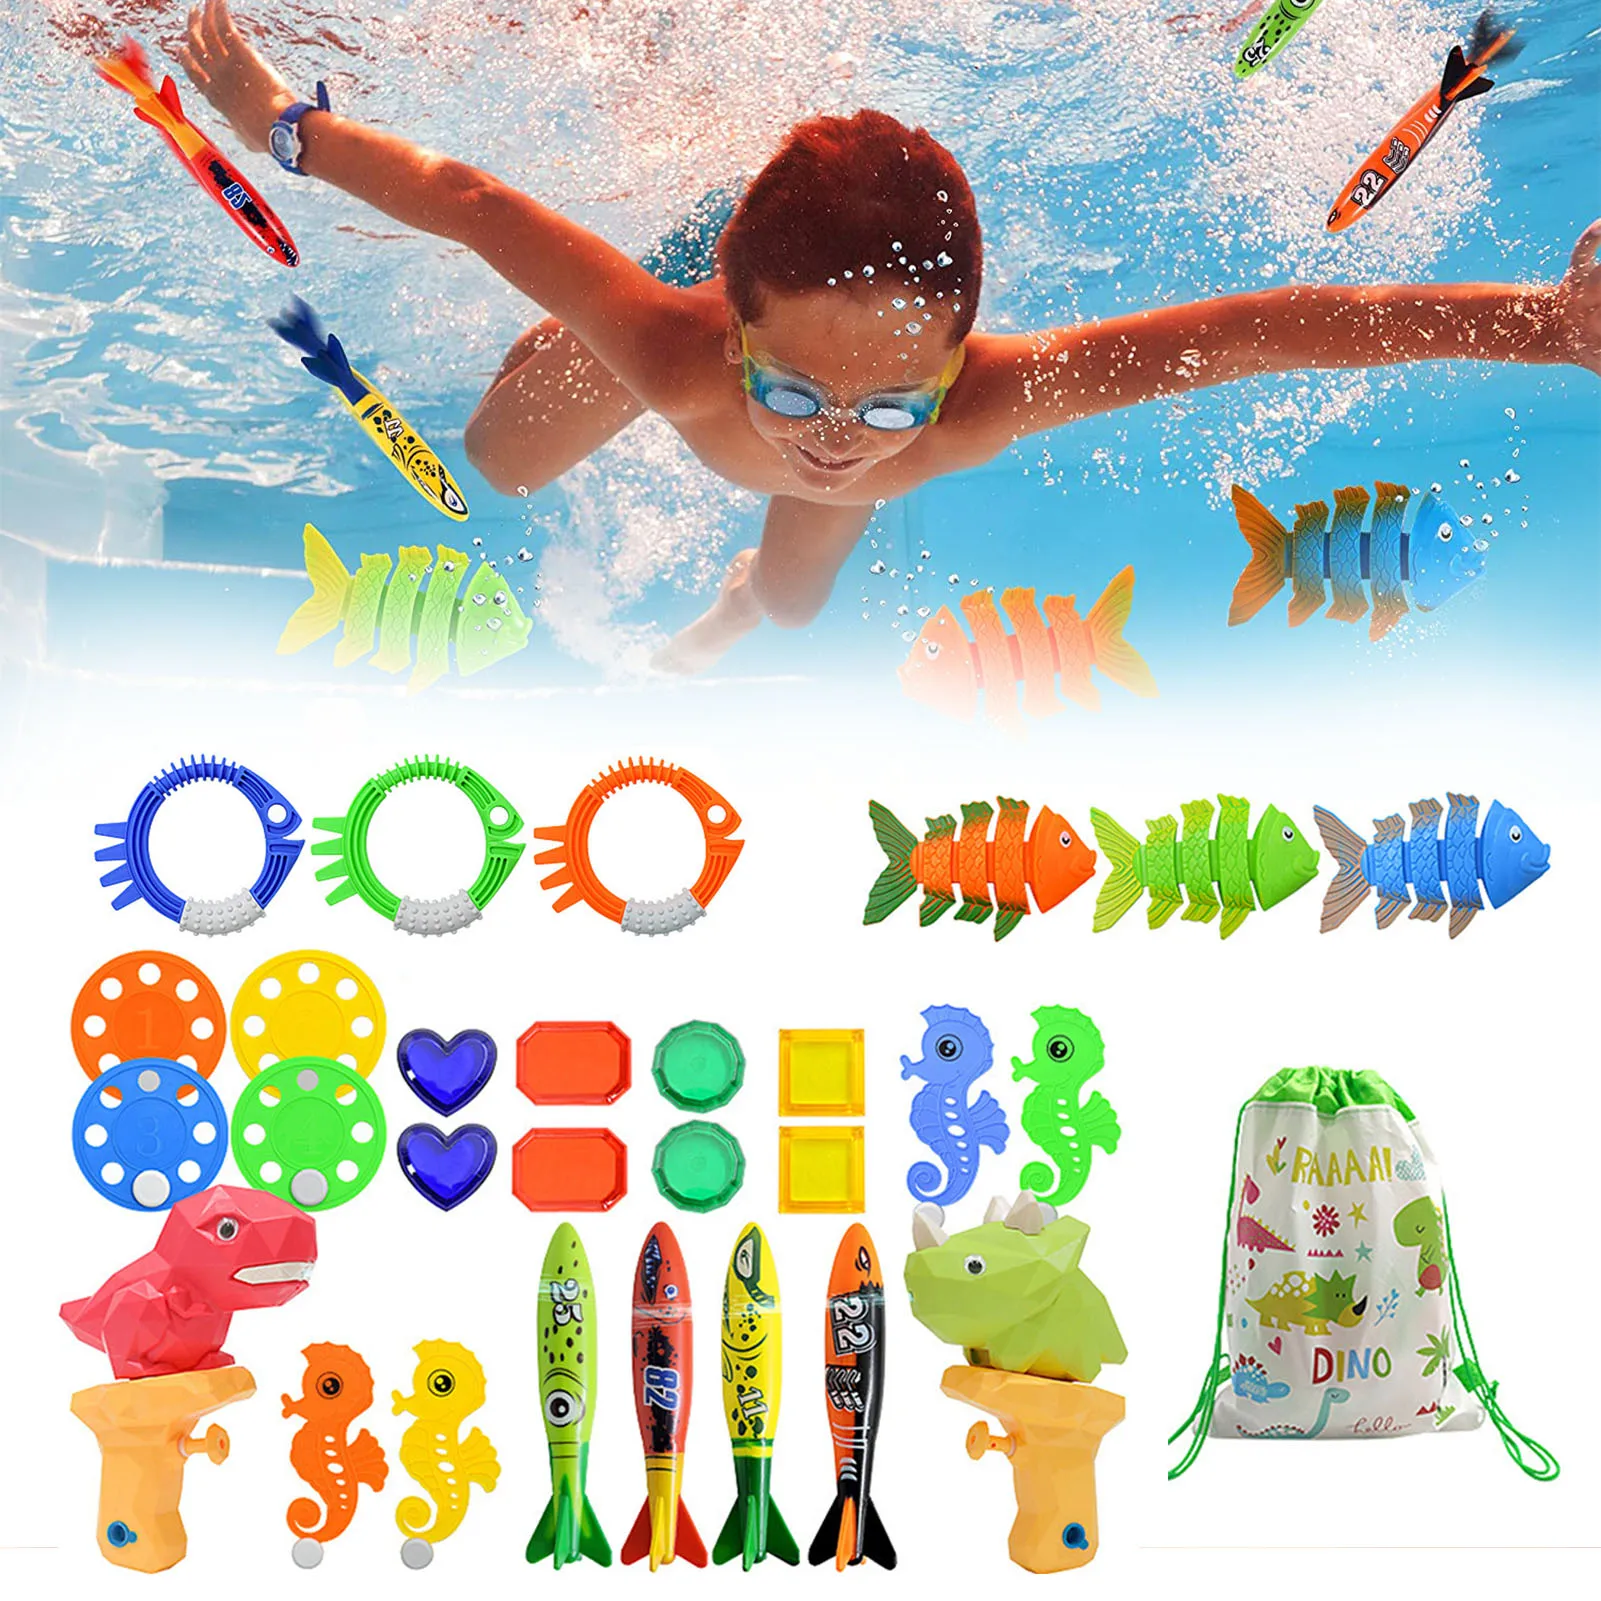 

Игрушки для дайвинга для летнего бассейна, 28 шт., набор игрушек для дайвинга с сумкой для переноски, детские игрушки для дайвинга, забавные и...